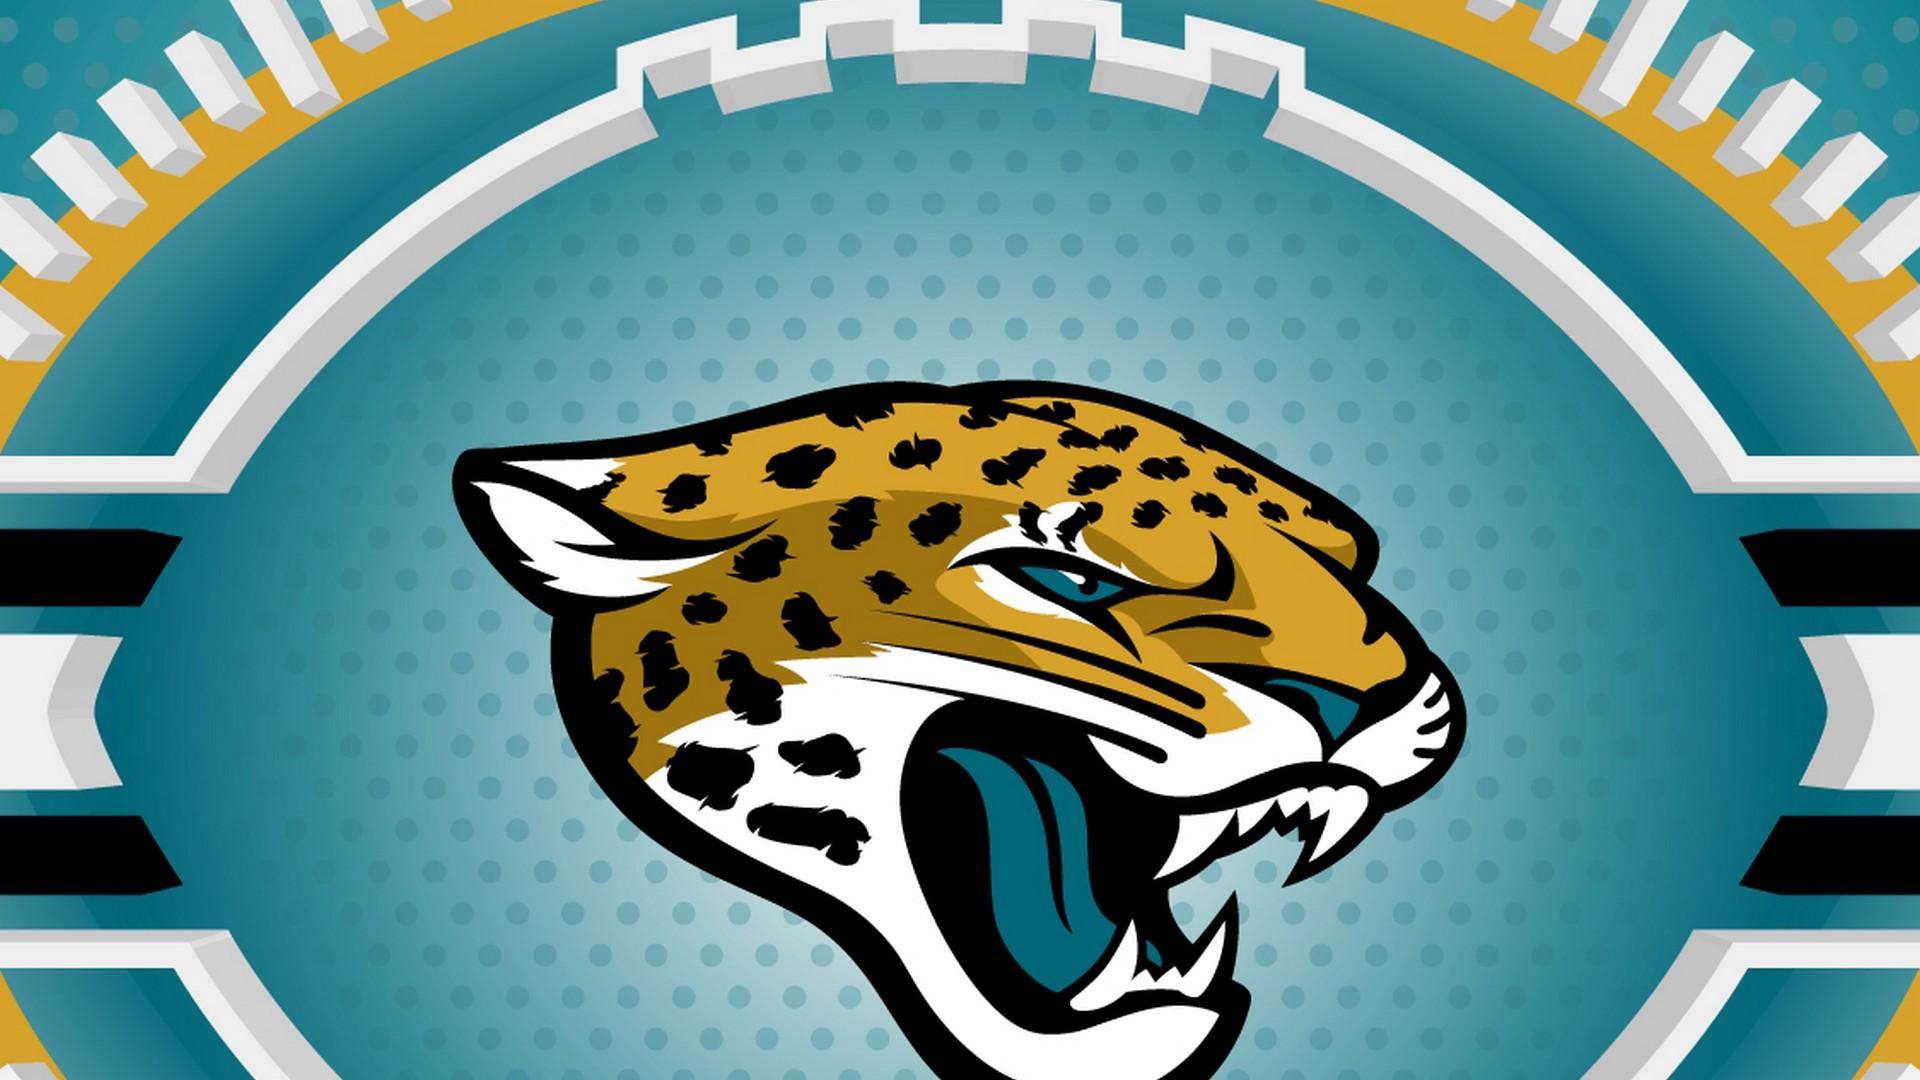 Free download Jacksonville Jaguars HD Wallpaper 2019 NFL